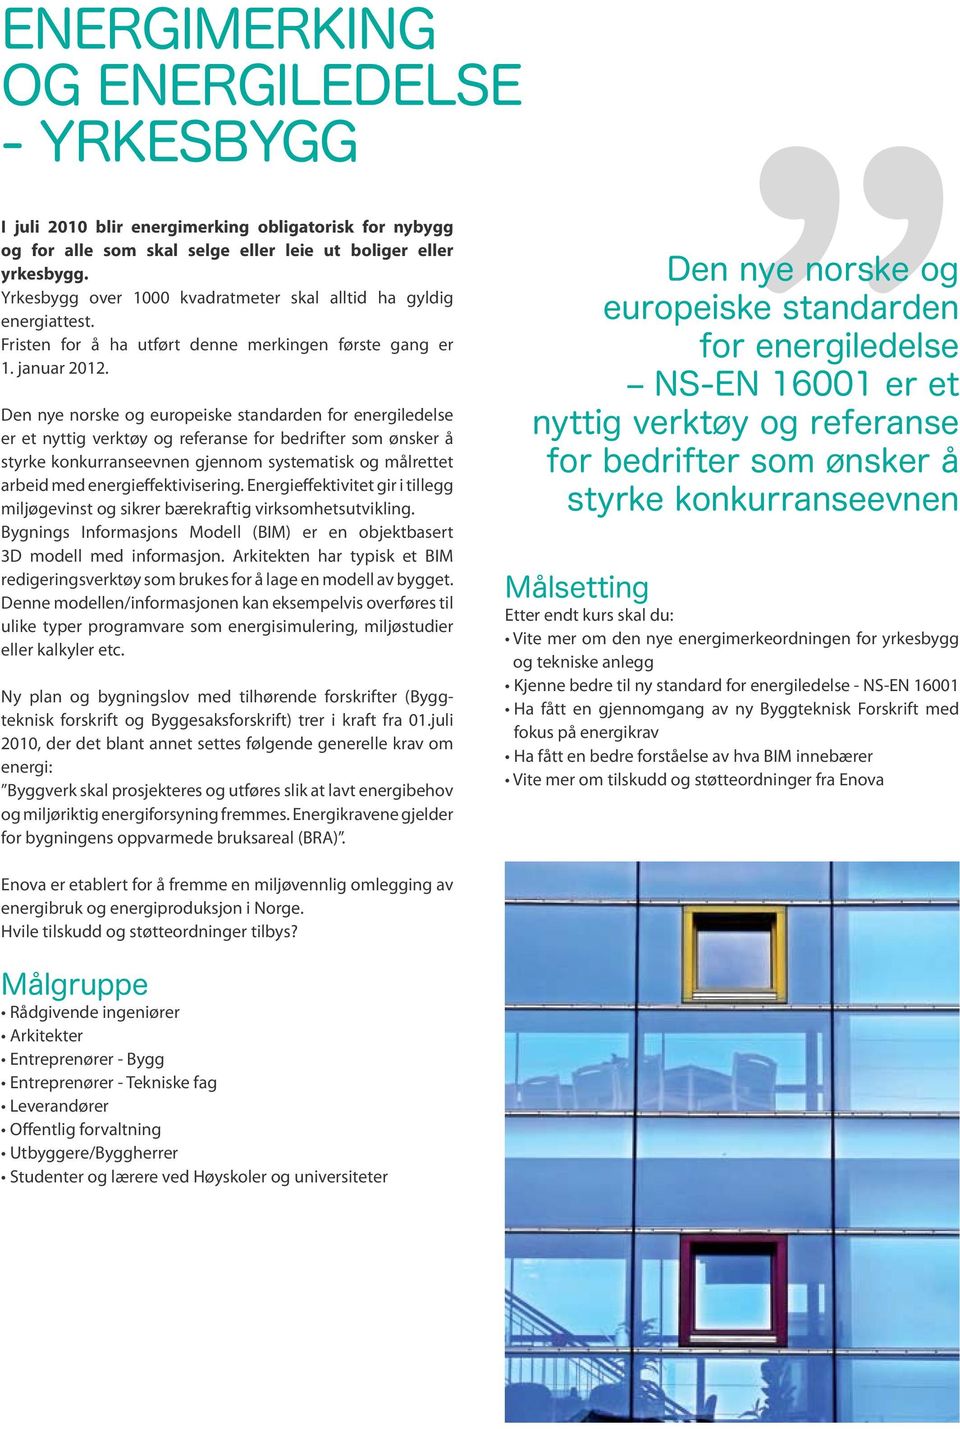 Den nye norske og europeiske standarden for energiledelse er et nyttig verktøy og referanse for bedrifter som ønsker å styrke konkurranseevnen gjennom systematisk og målrettet arbeid med